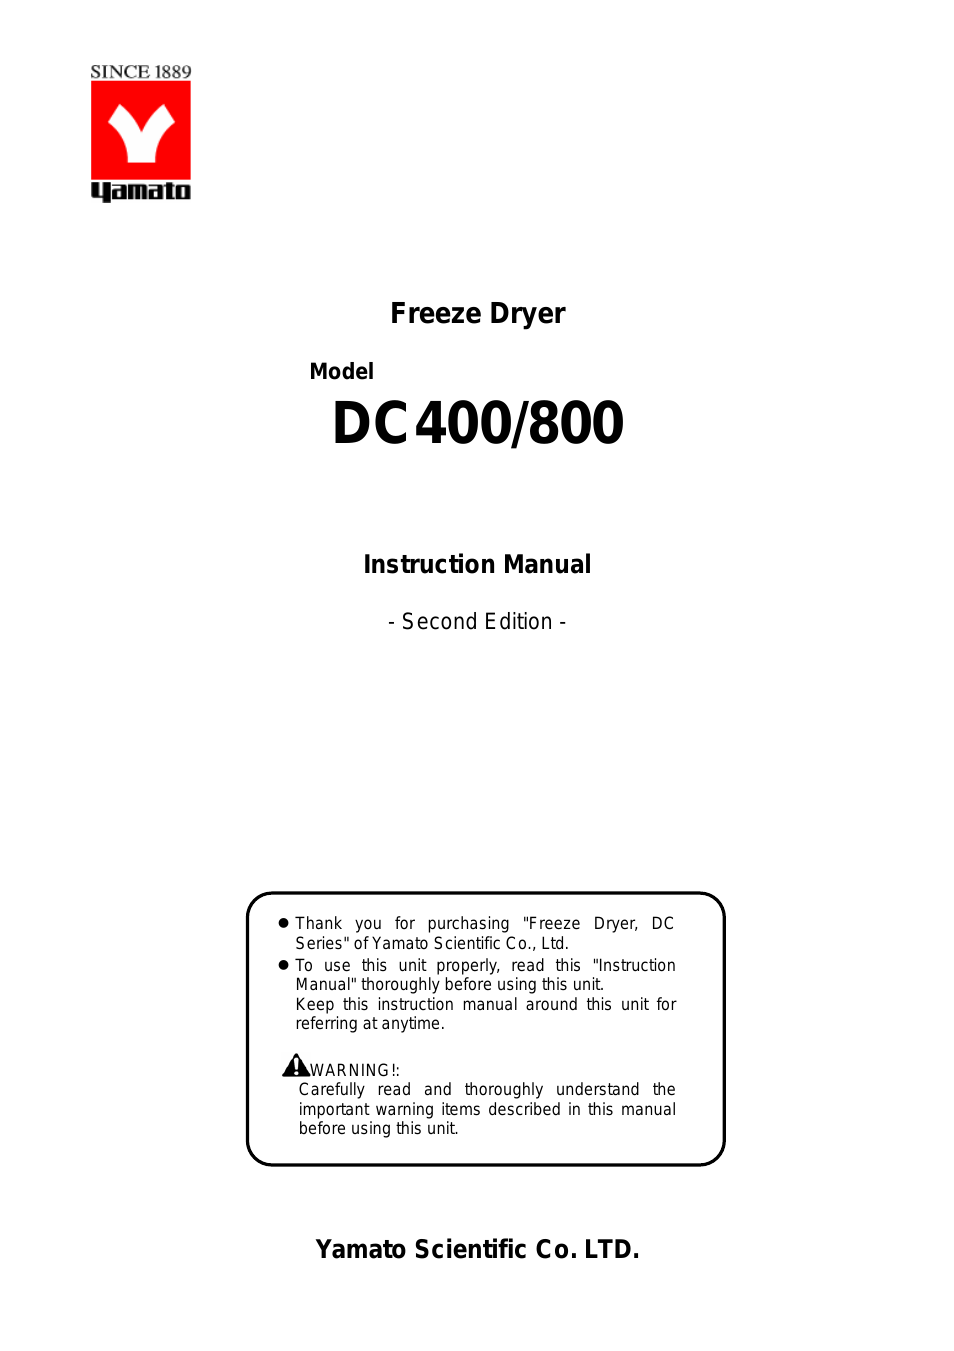 DC800 Freeze Dryers